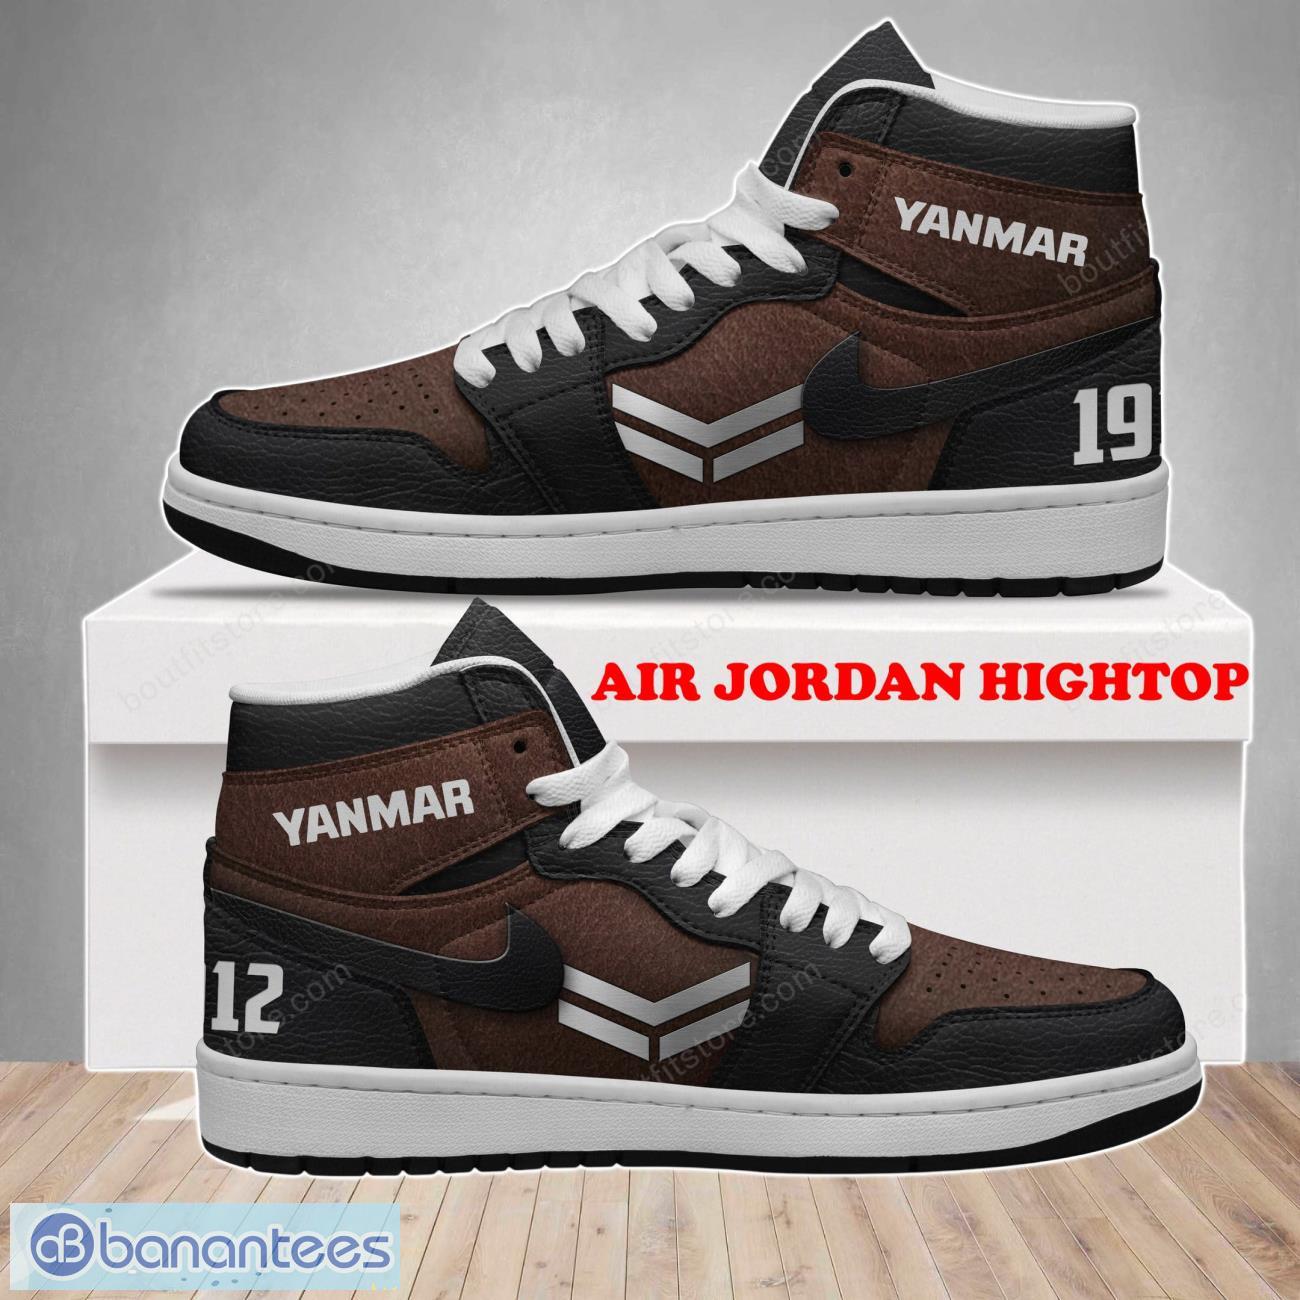 Yanmar Air Jordan Hightop Classic Style For Men Women Product Photo 1